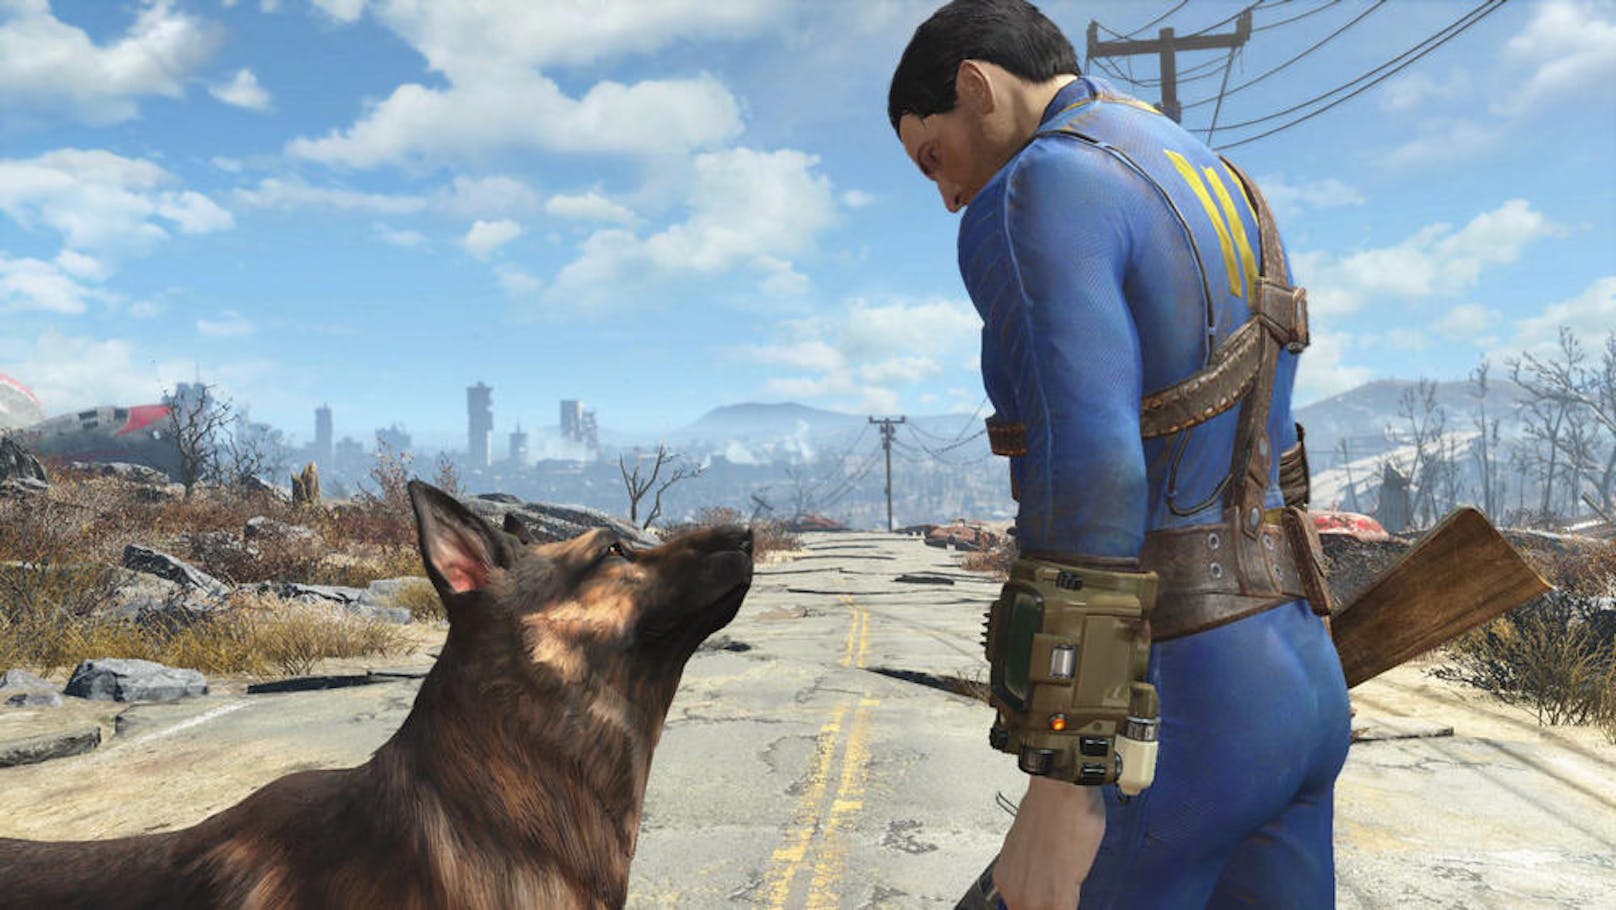 Das Fallout 4-Free-to-Play-Wochenende hat begonnen. Noch bis Montag, 21. Mai, 9 Uhr, steht Fallout 4 kostenlos auf der Xbox One zur Verfügung. Wer sich im Laufe des Wochenendes zum Kauf entscheidet, dessen bisheriger Spielfortschritt wird gespeichert, damit man danach schön weiter auf Entdeckung gehen kann. Das Fallout 4-Free-to-Play-Wochenende ist Teil der Free-to-Play-Tage von Xbox One. Das bedeutet, dass alle Besitzer einer Xbox One mit von der Partie sind - auch ohne Xbox Live Gold-Mitgliedschaft.